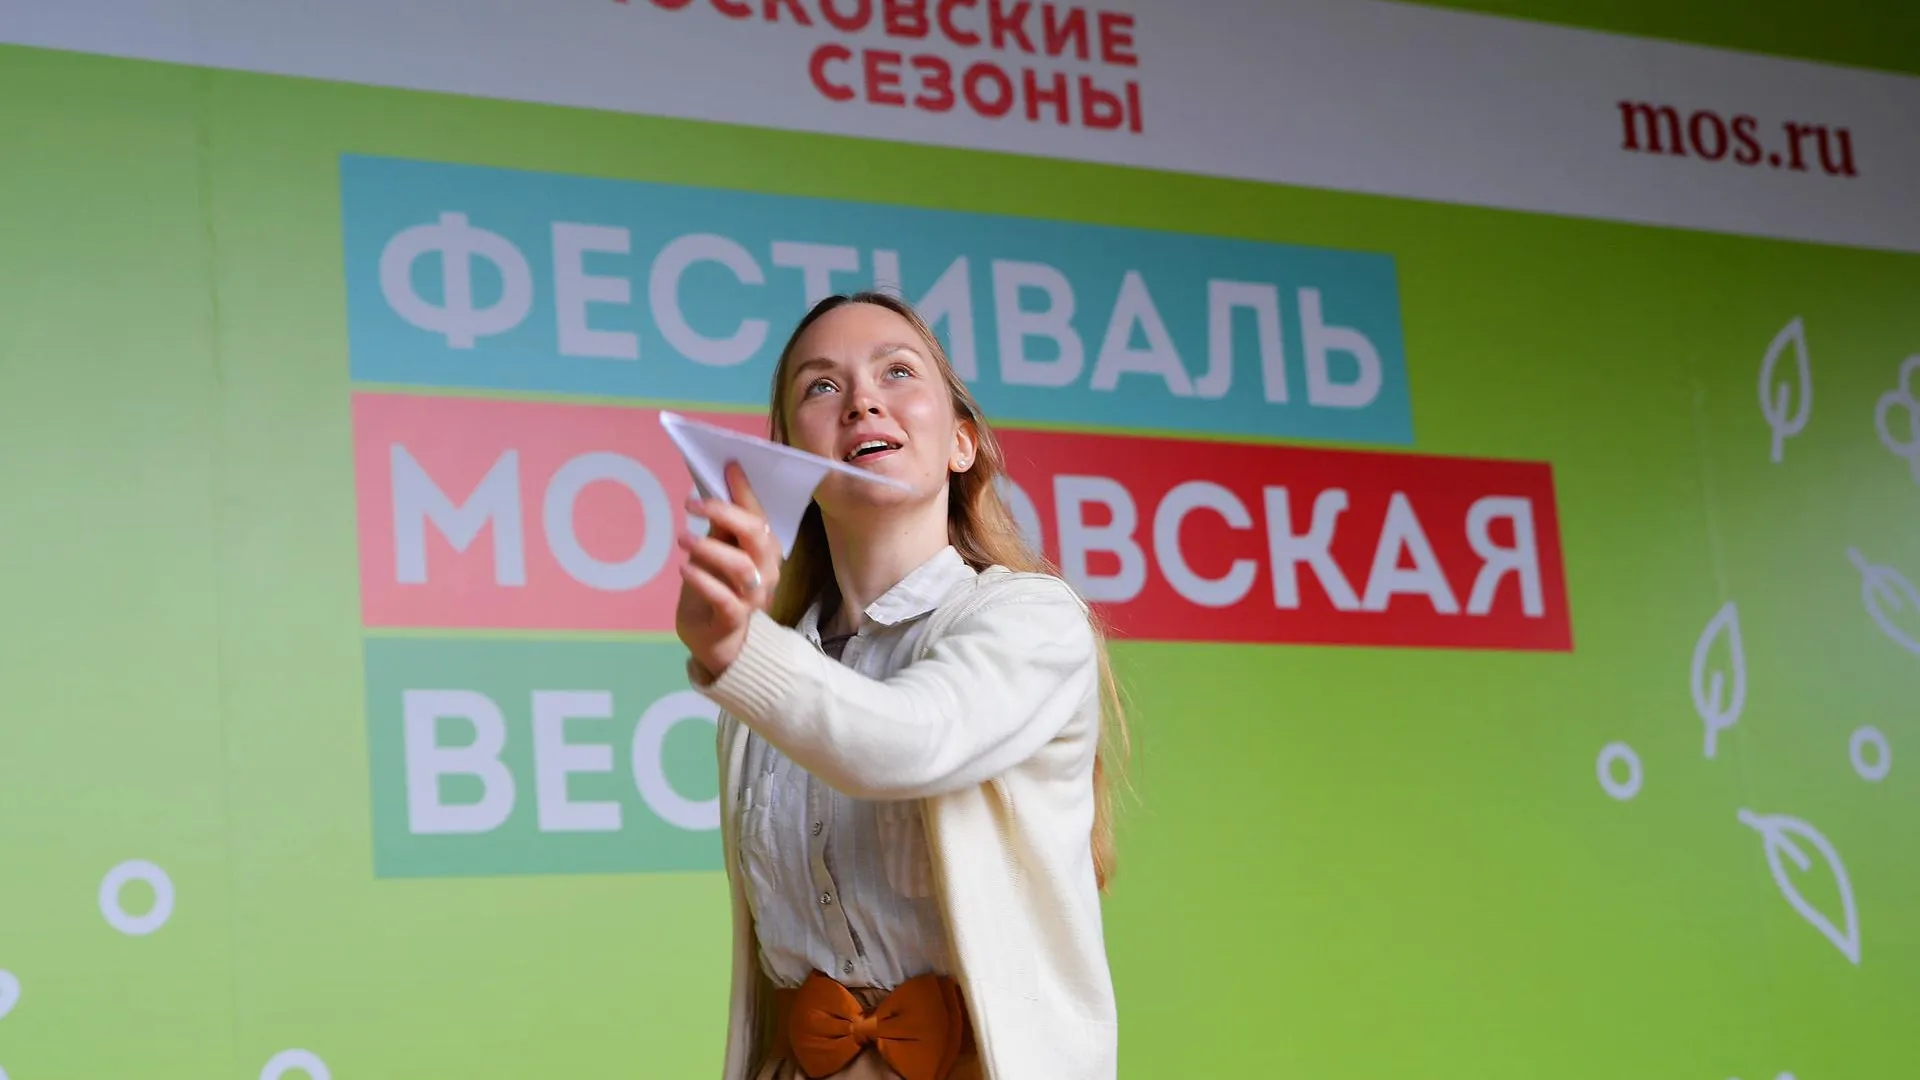 Фестиваль «Московская весна» стартует на 27 площадках столицы